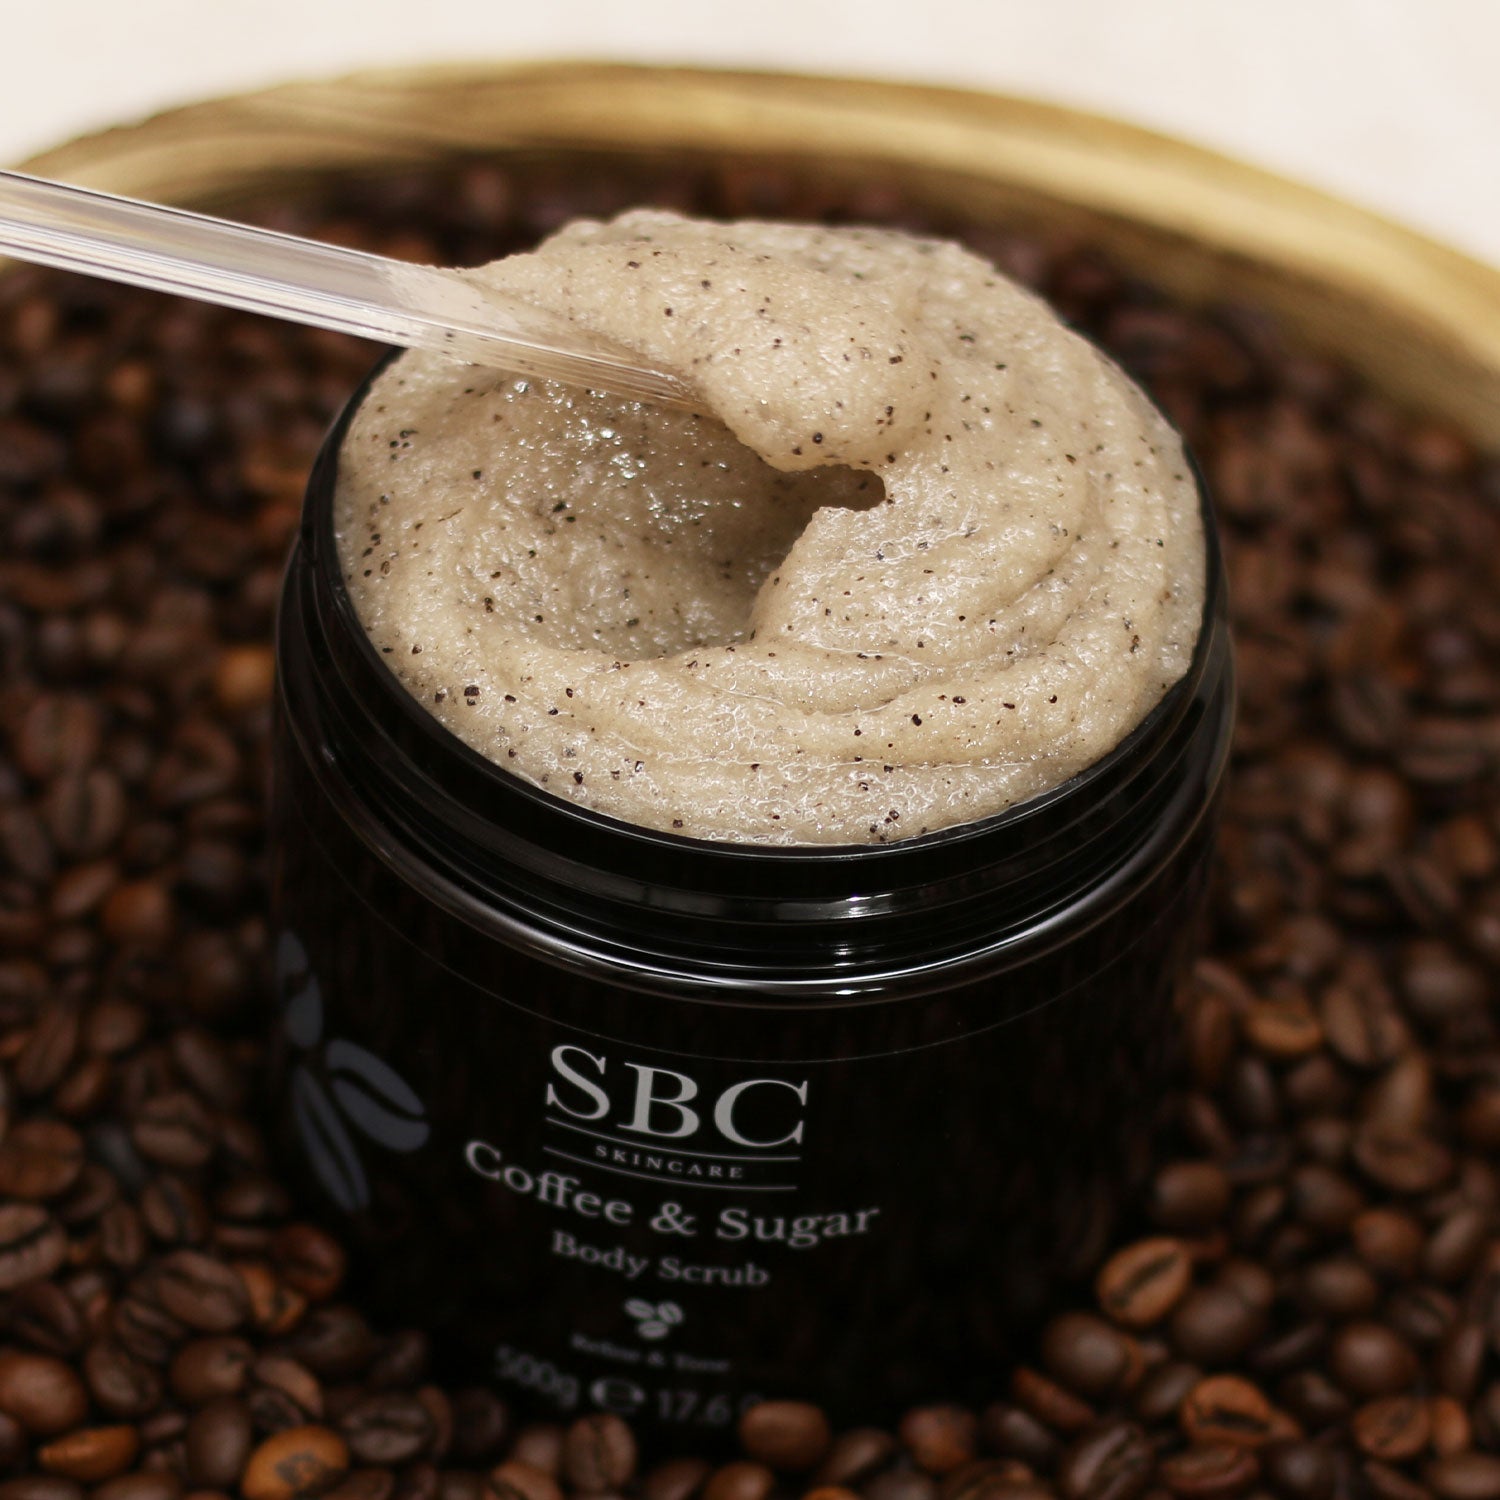 Coffee & Sugar Body Scrub being mixed by a plastic spatula 